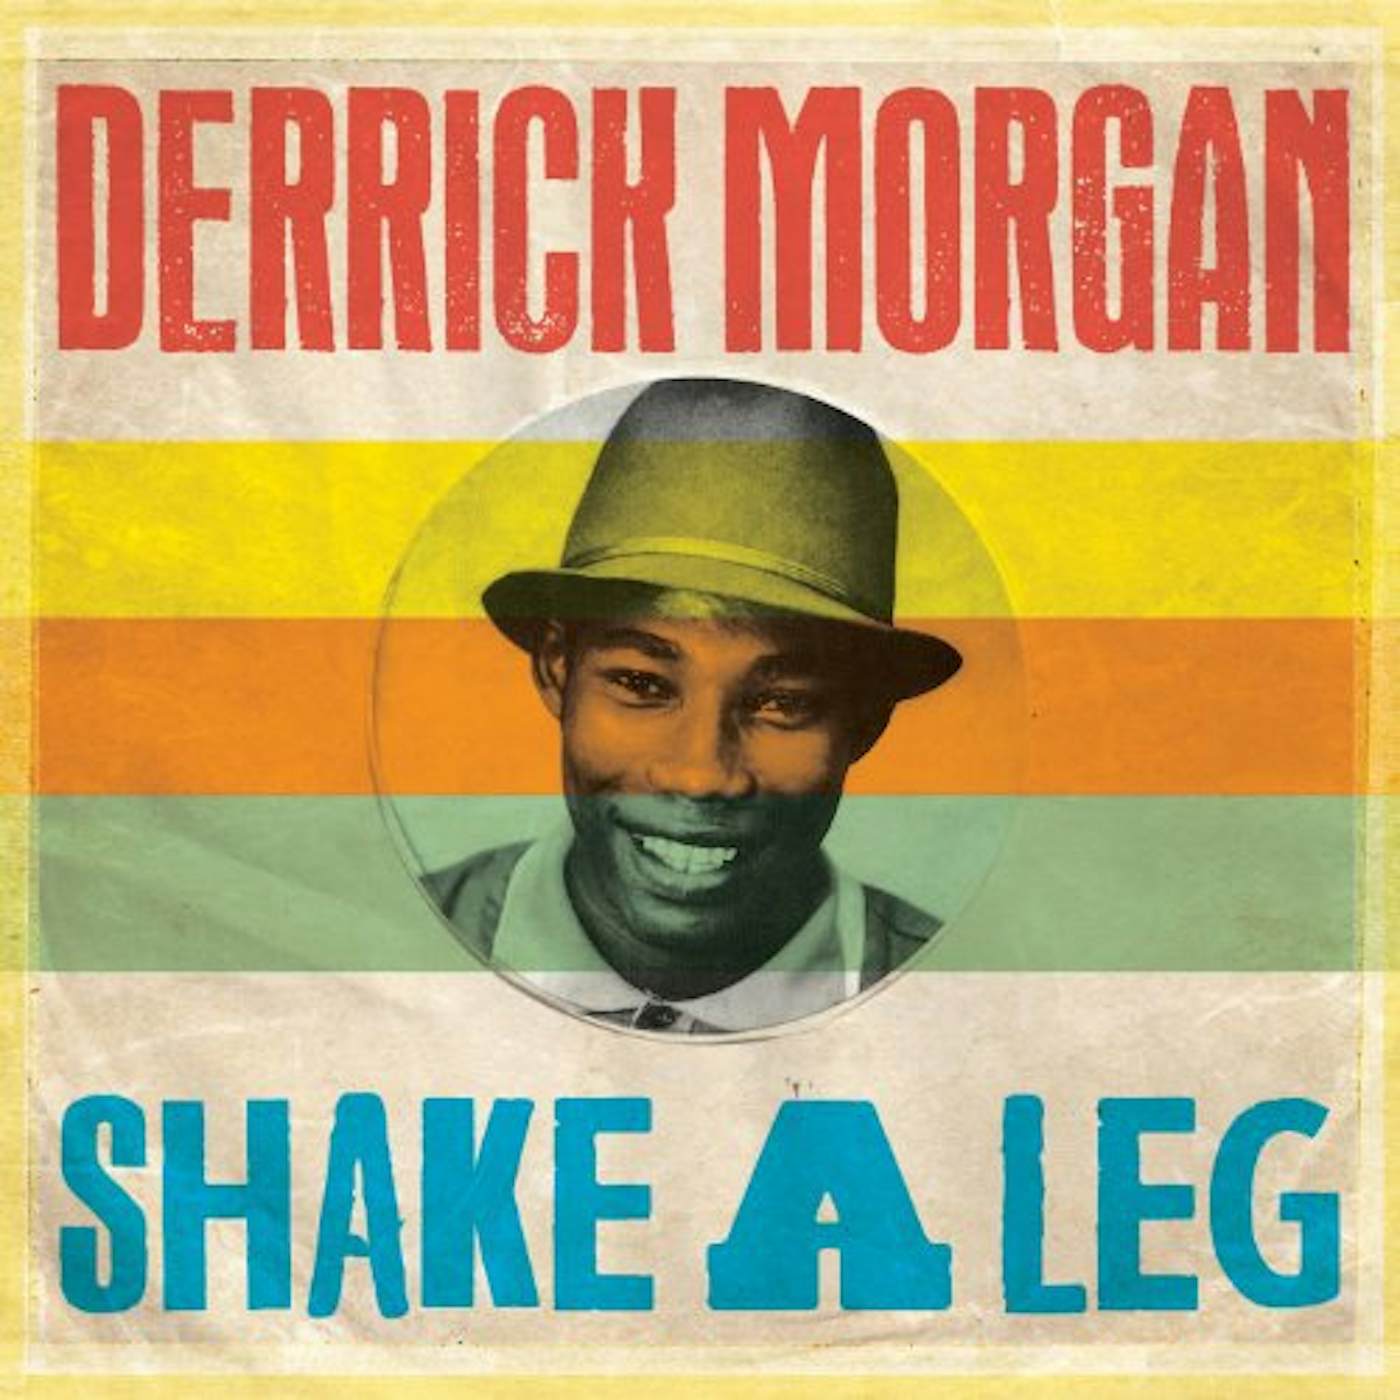 Derrick Morgan Shake a Leg Vinyl Record